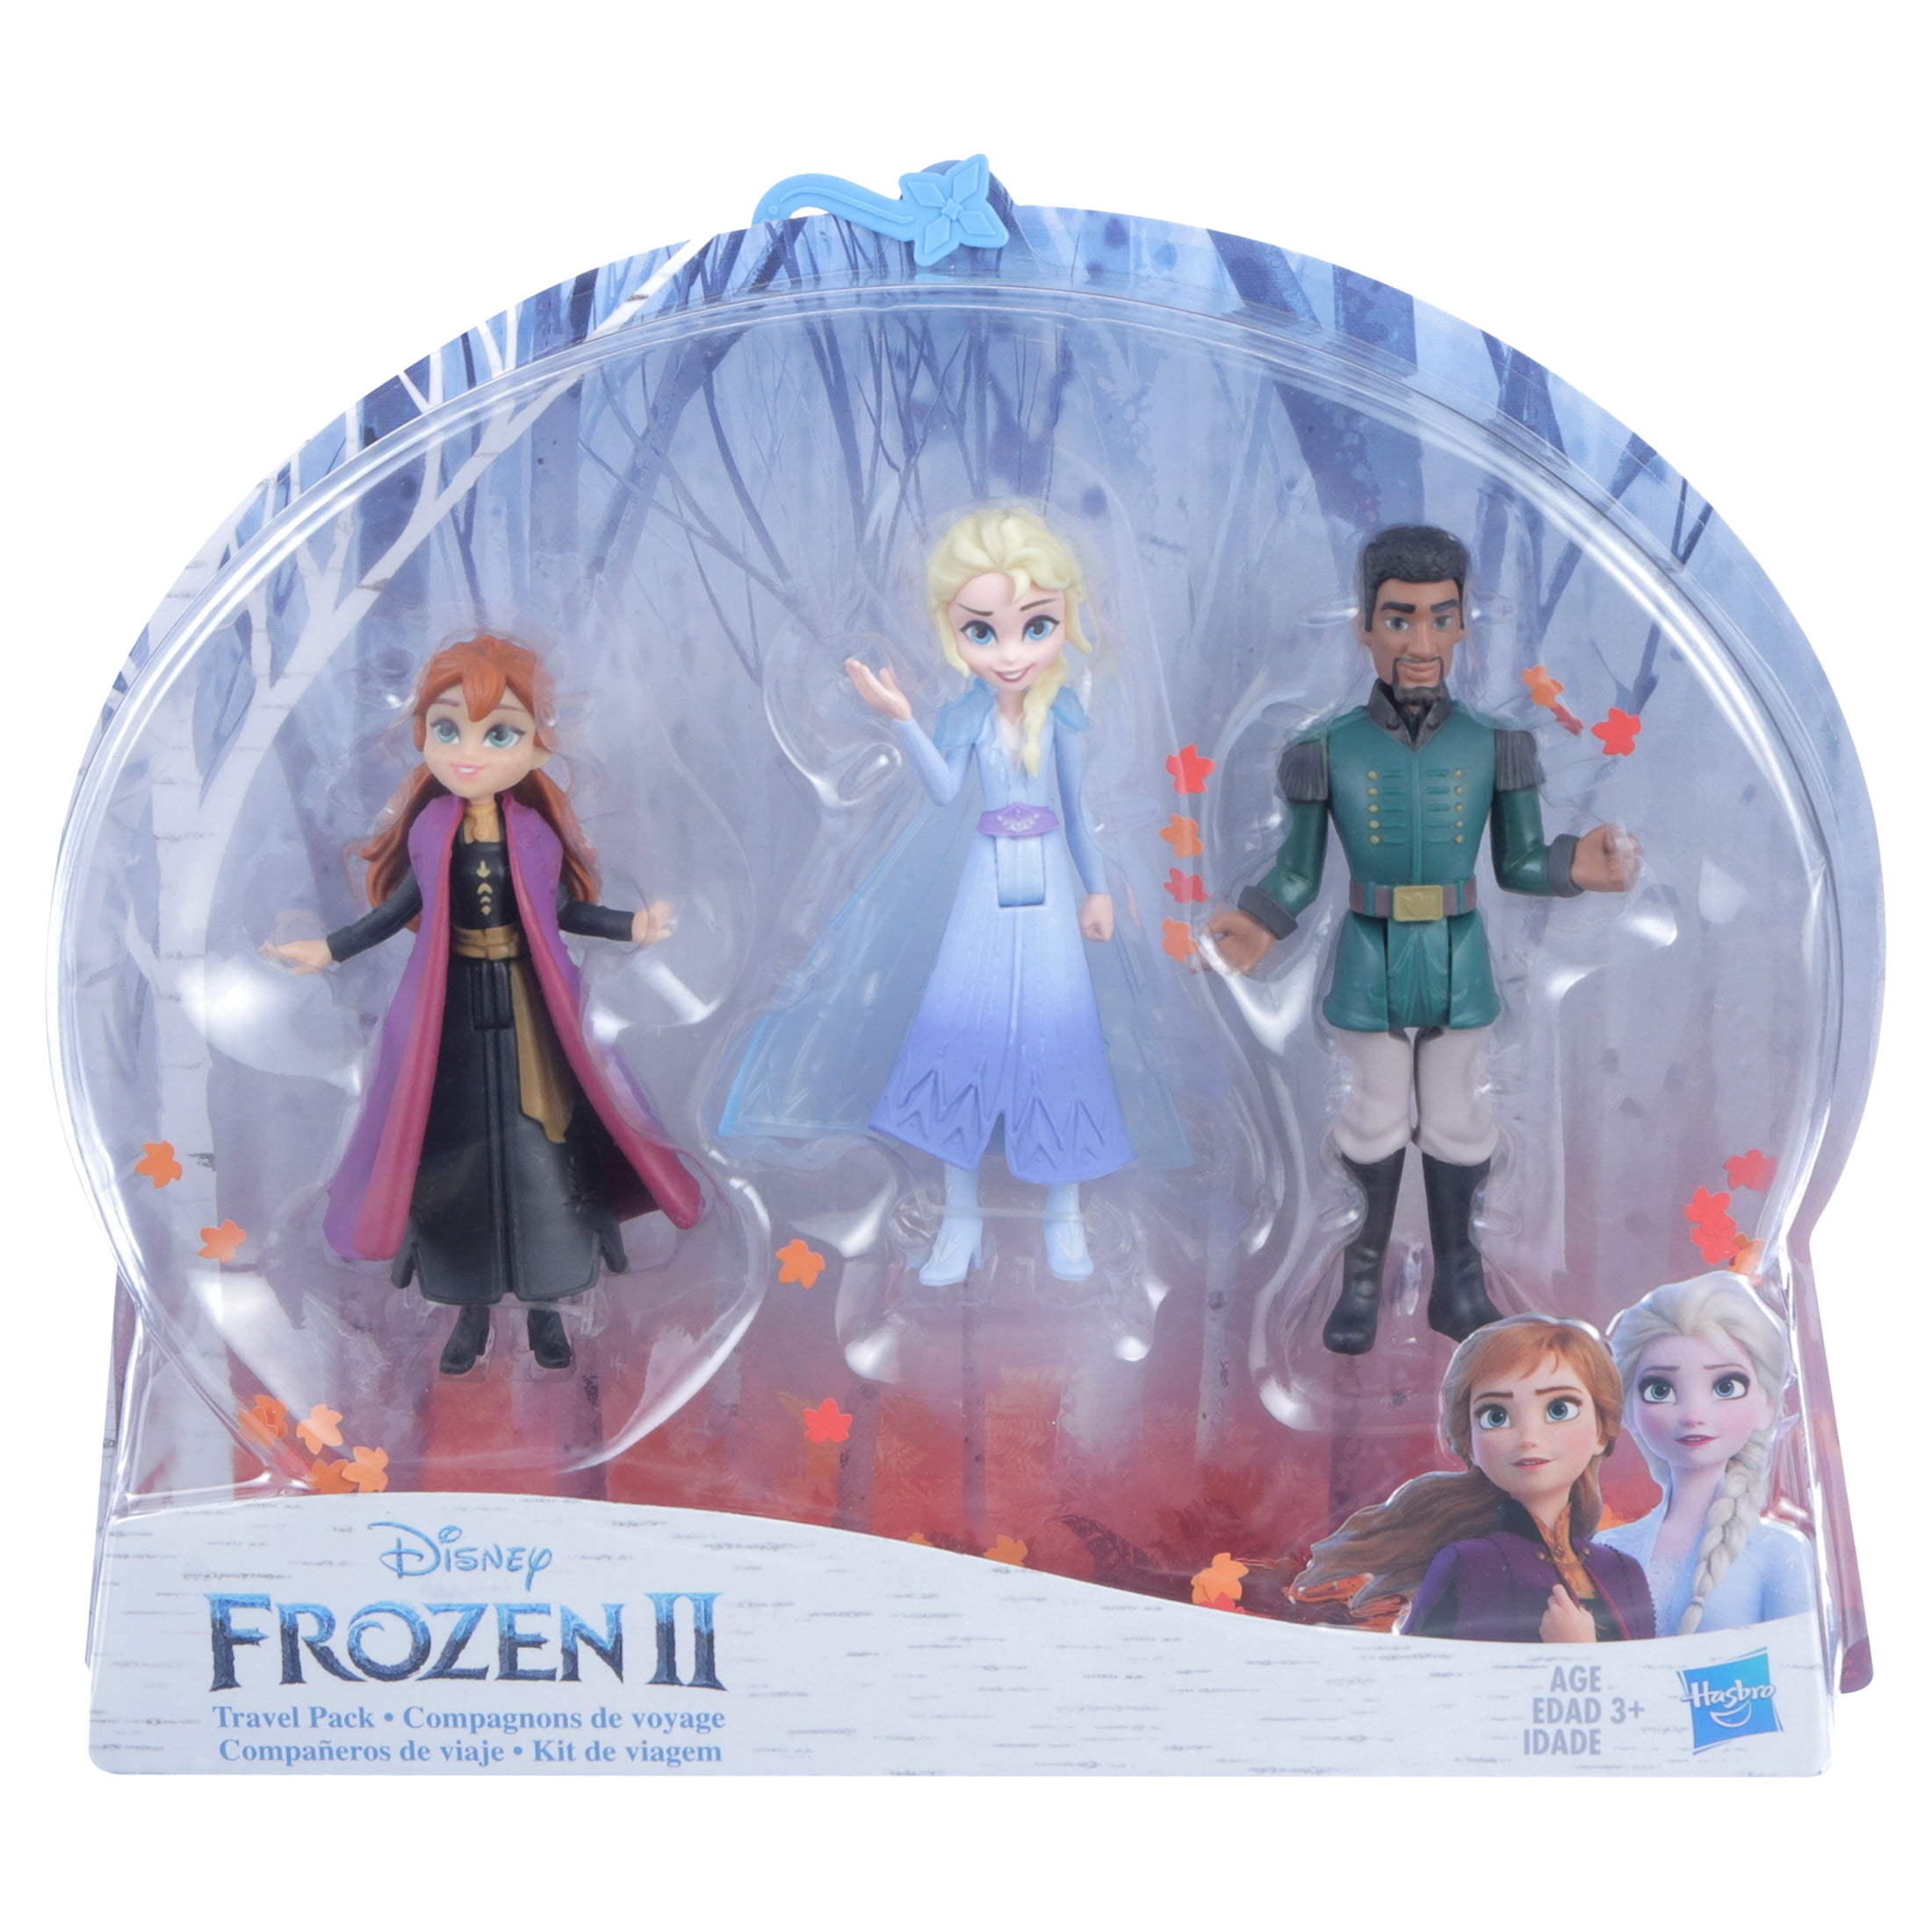 achtergrond een kopje makkelijk te gebruiken Disney Frozen 2 Small Doll Playset, Includes Elsa, Anna and Mattias Dolls -  Walmart.com